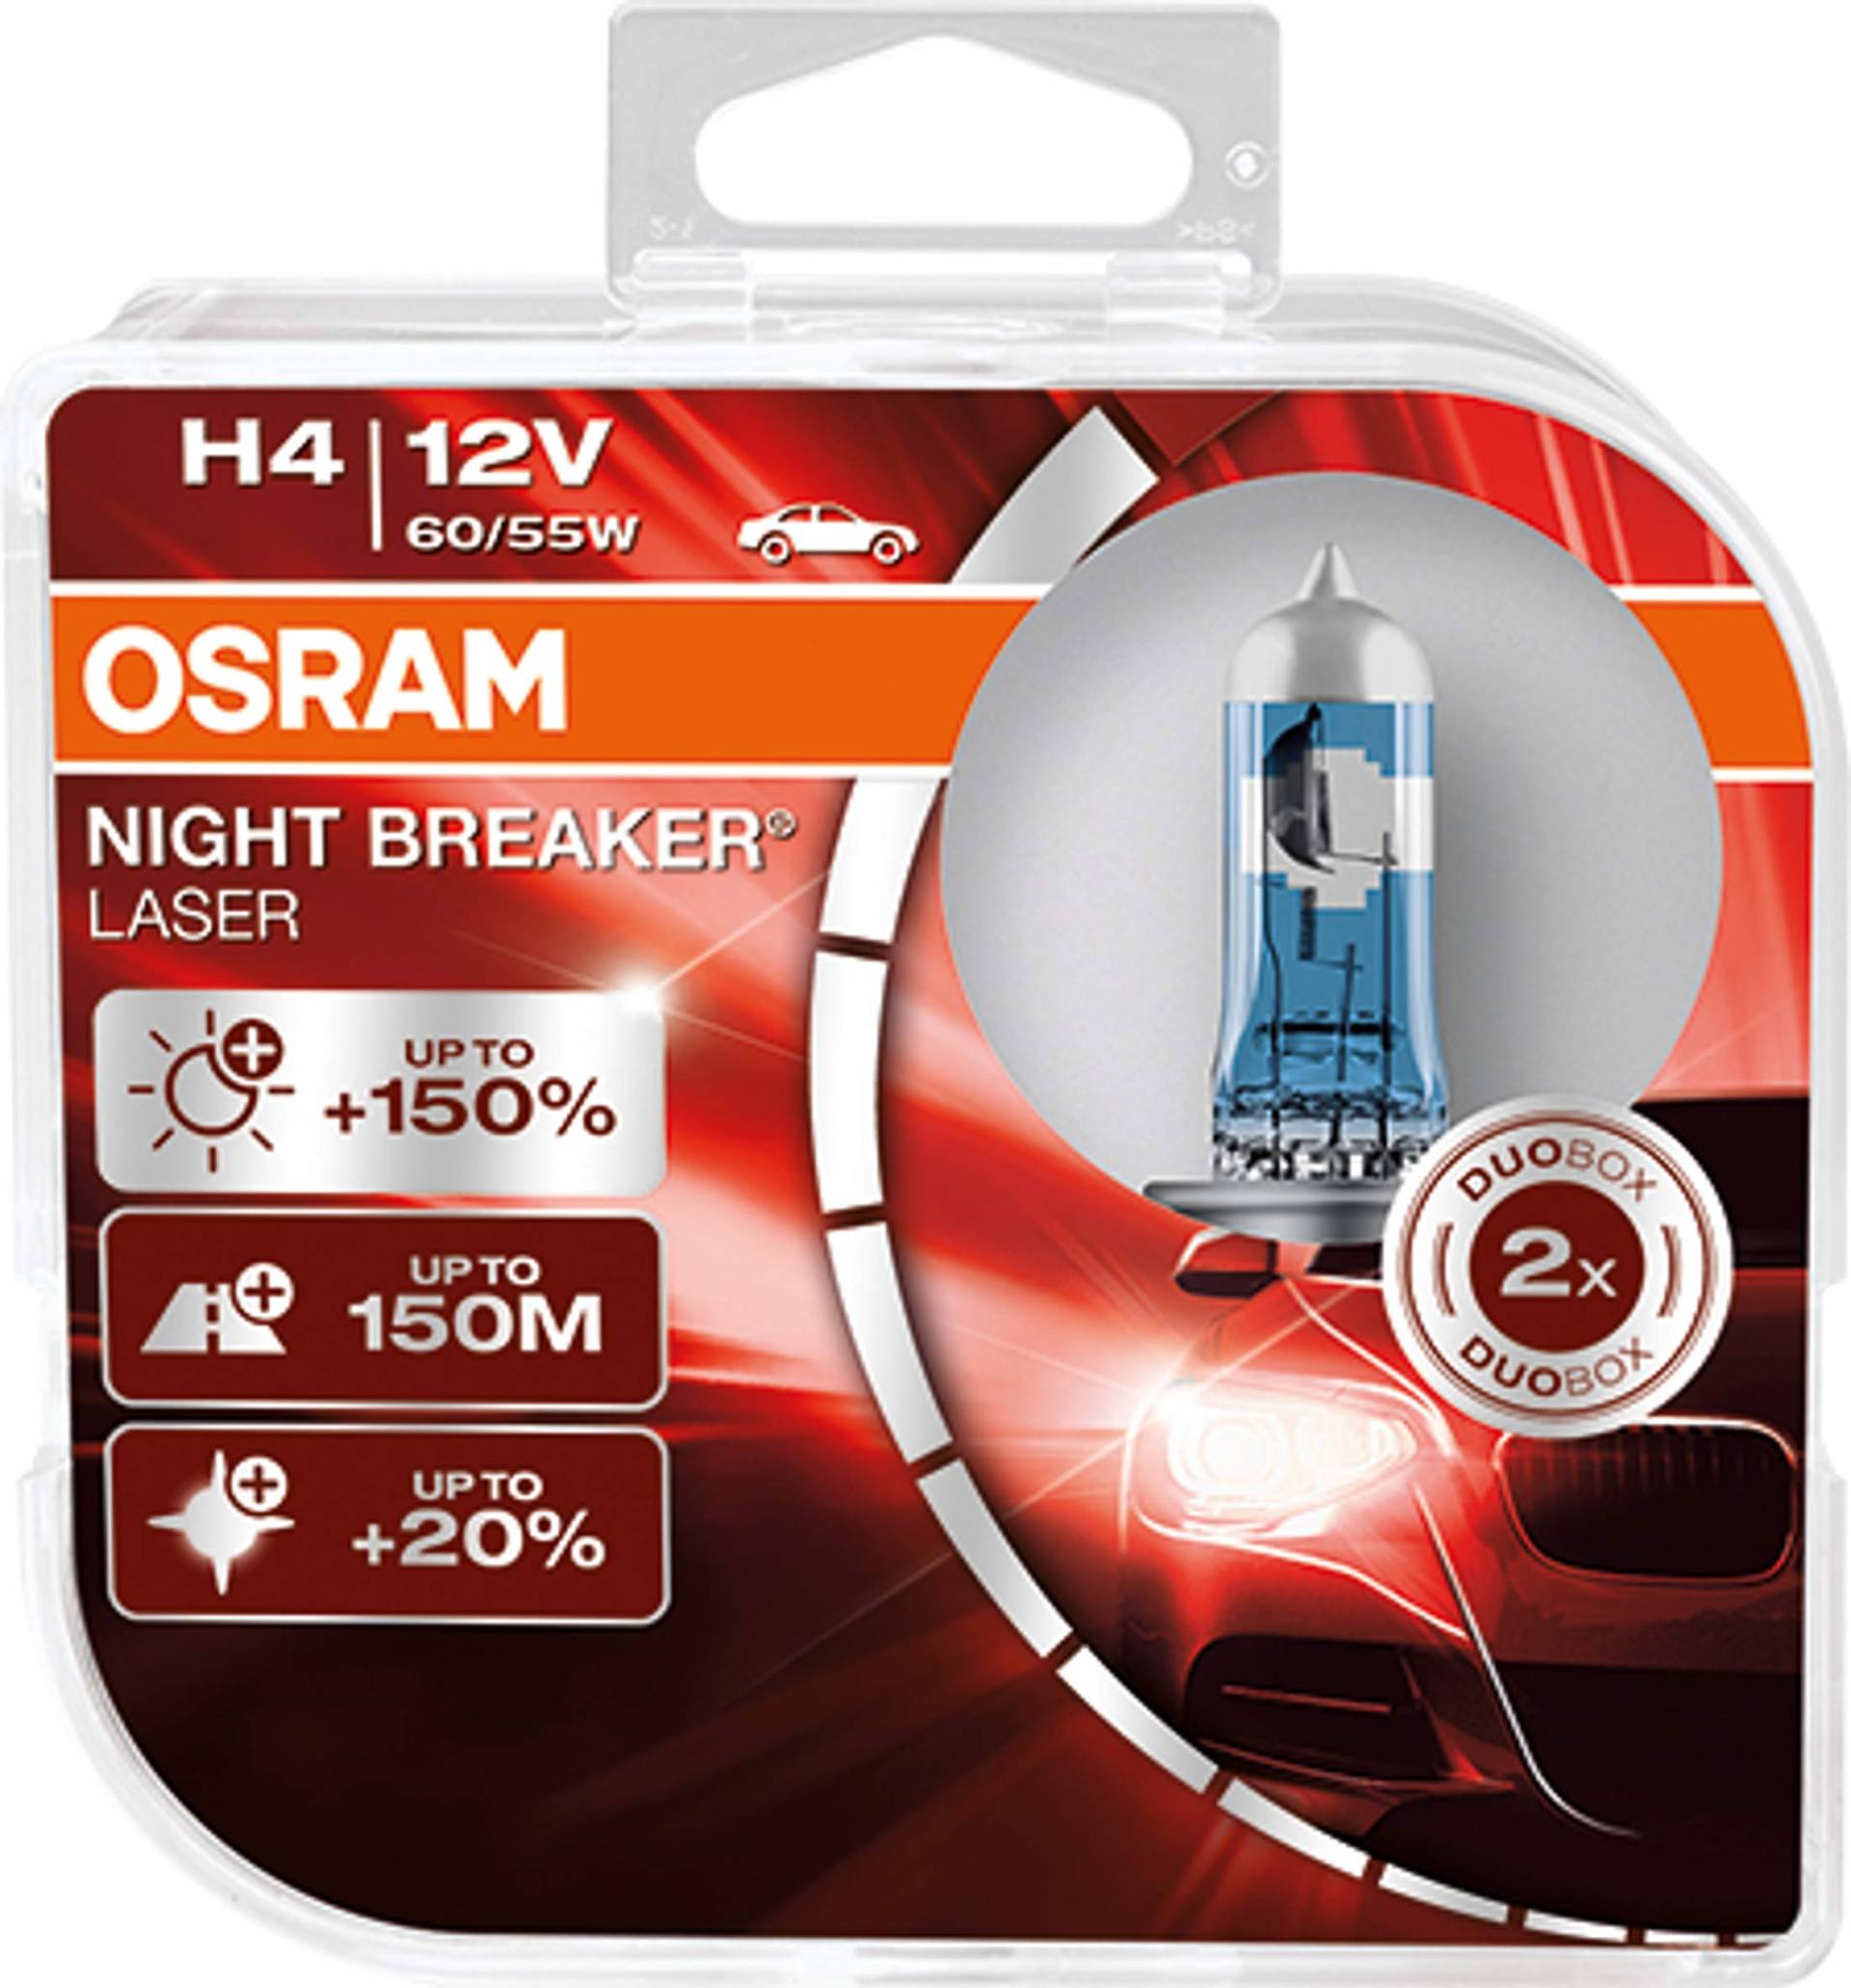 OSRAM NIGHT BREAKER LASER H4, +150% mehr Helligkeit, Halogen-Scheinwerferlampe, 64193NL-HCB, 12V PKW, Duo Box (2 Lampen) von Osram